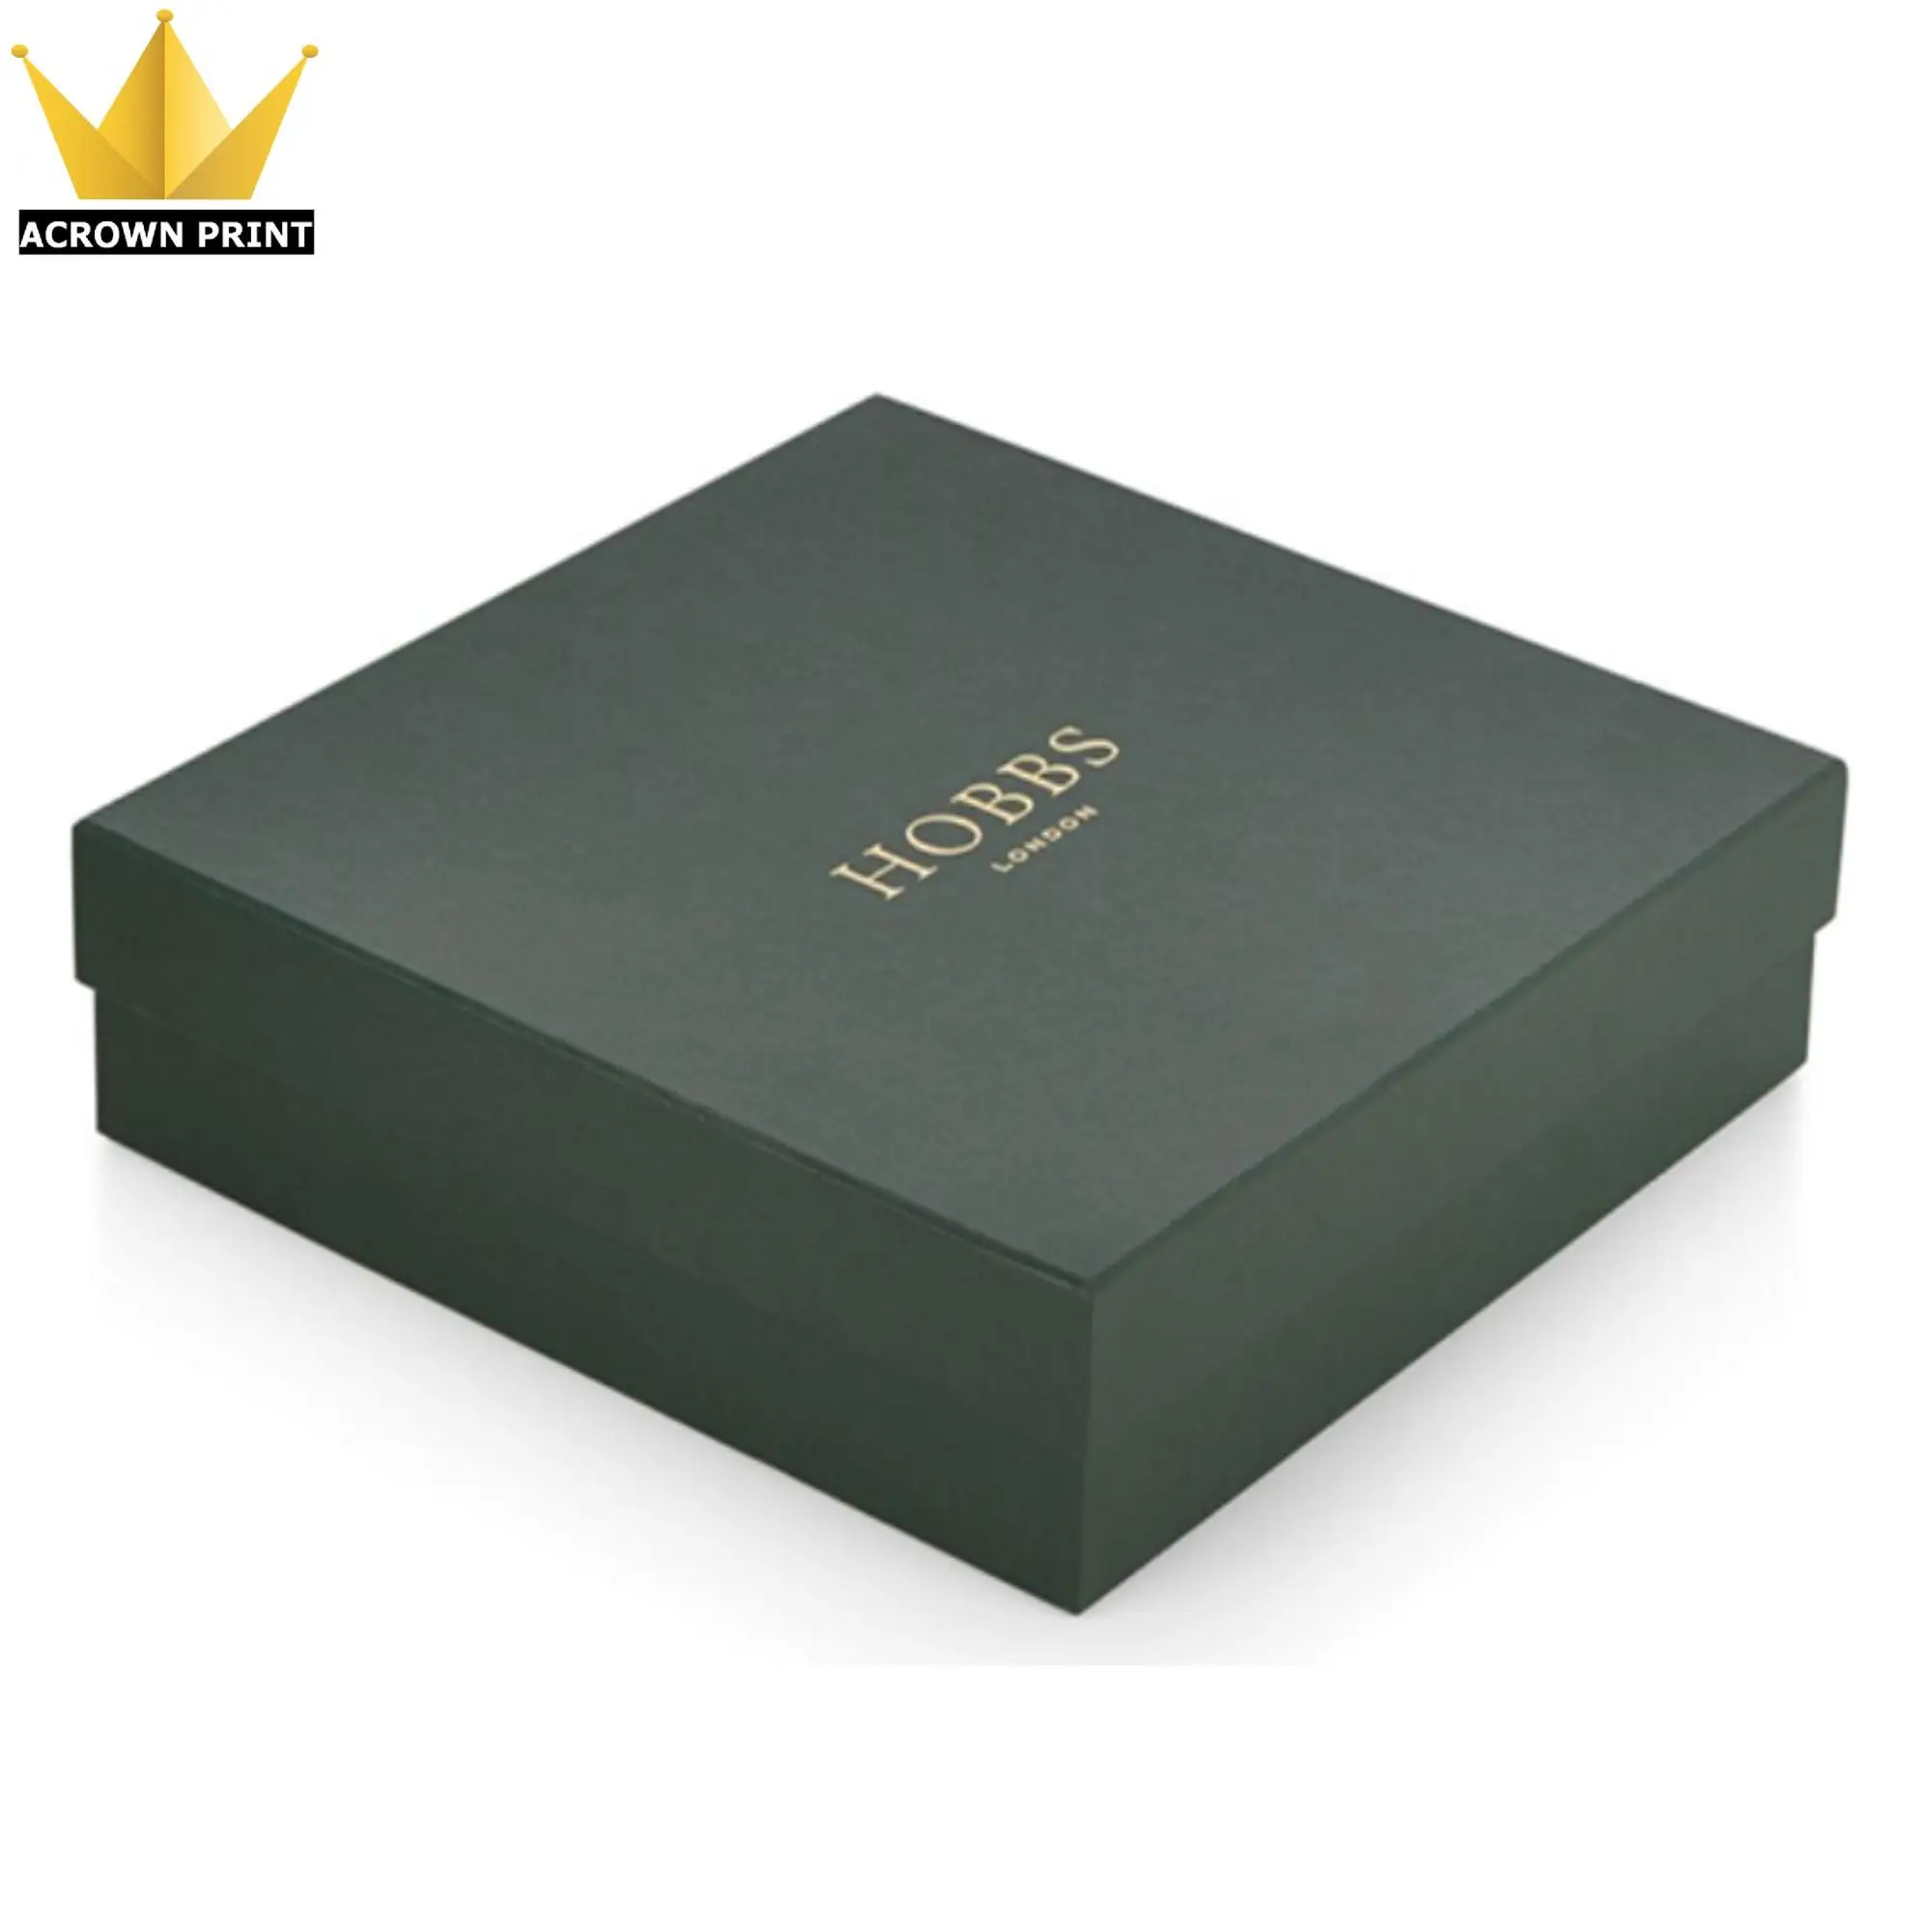 ブランドロゴ高級ベビー服包装ボックス衣類包装用 Buy ボックス衣料用包装 高級衣料品包装ボックス 衣類ボックス Product On Alibaba Com